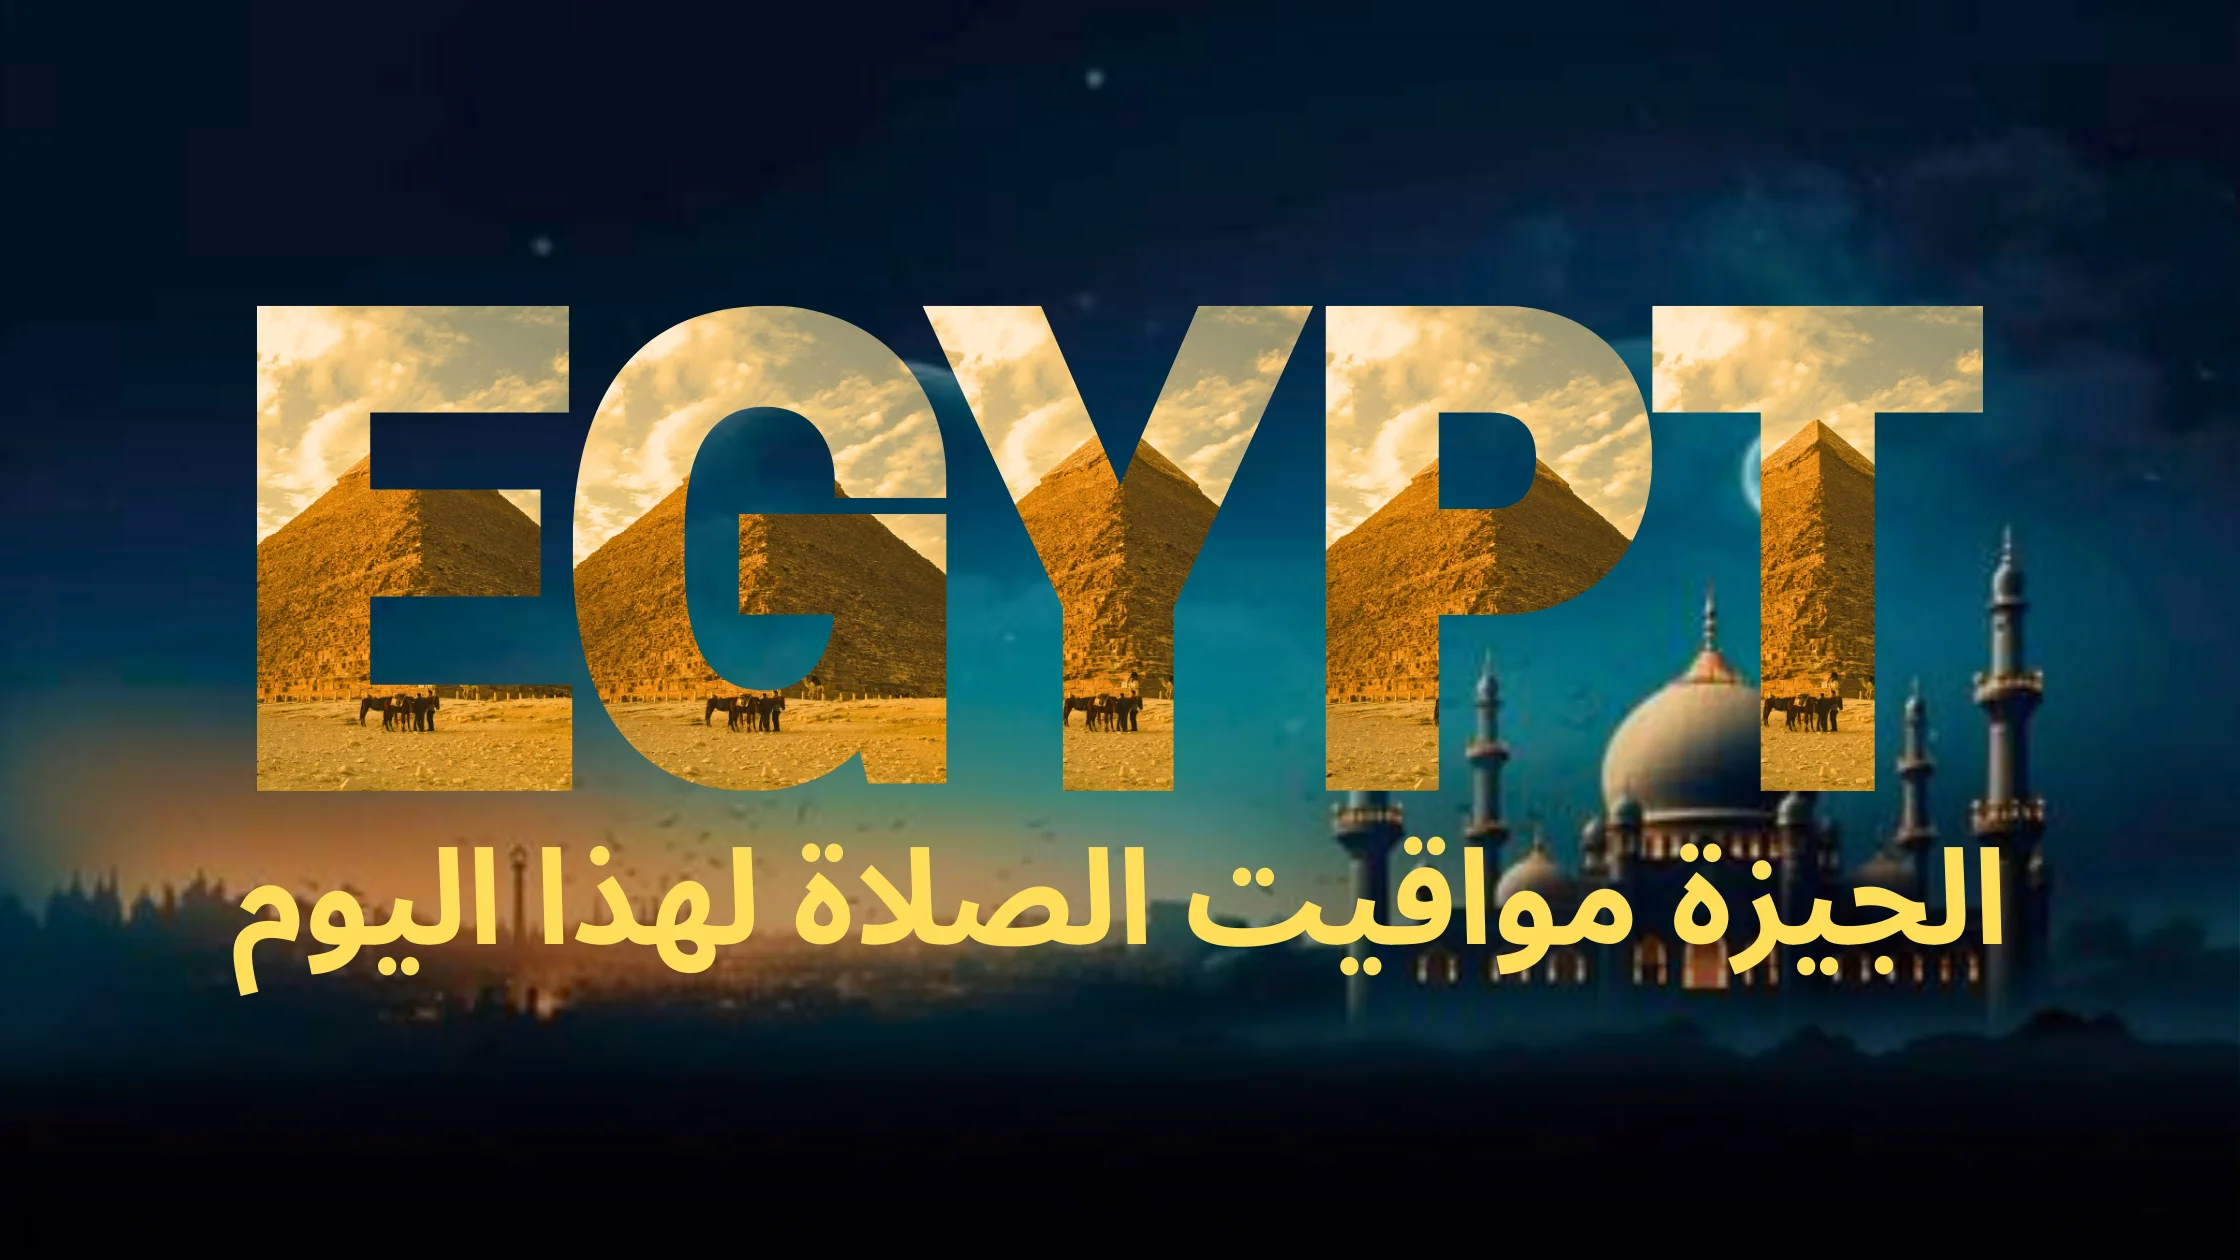 نص مكتوب بالخط العربي "مصر" متبوعًا بالنص العربي "الجيزة مواقيت الصلاة لهذا اليوم"